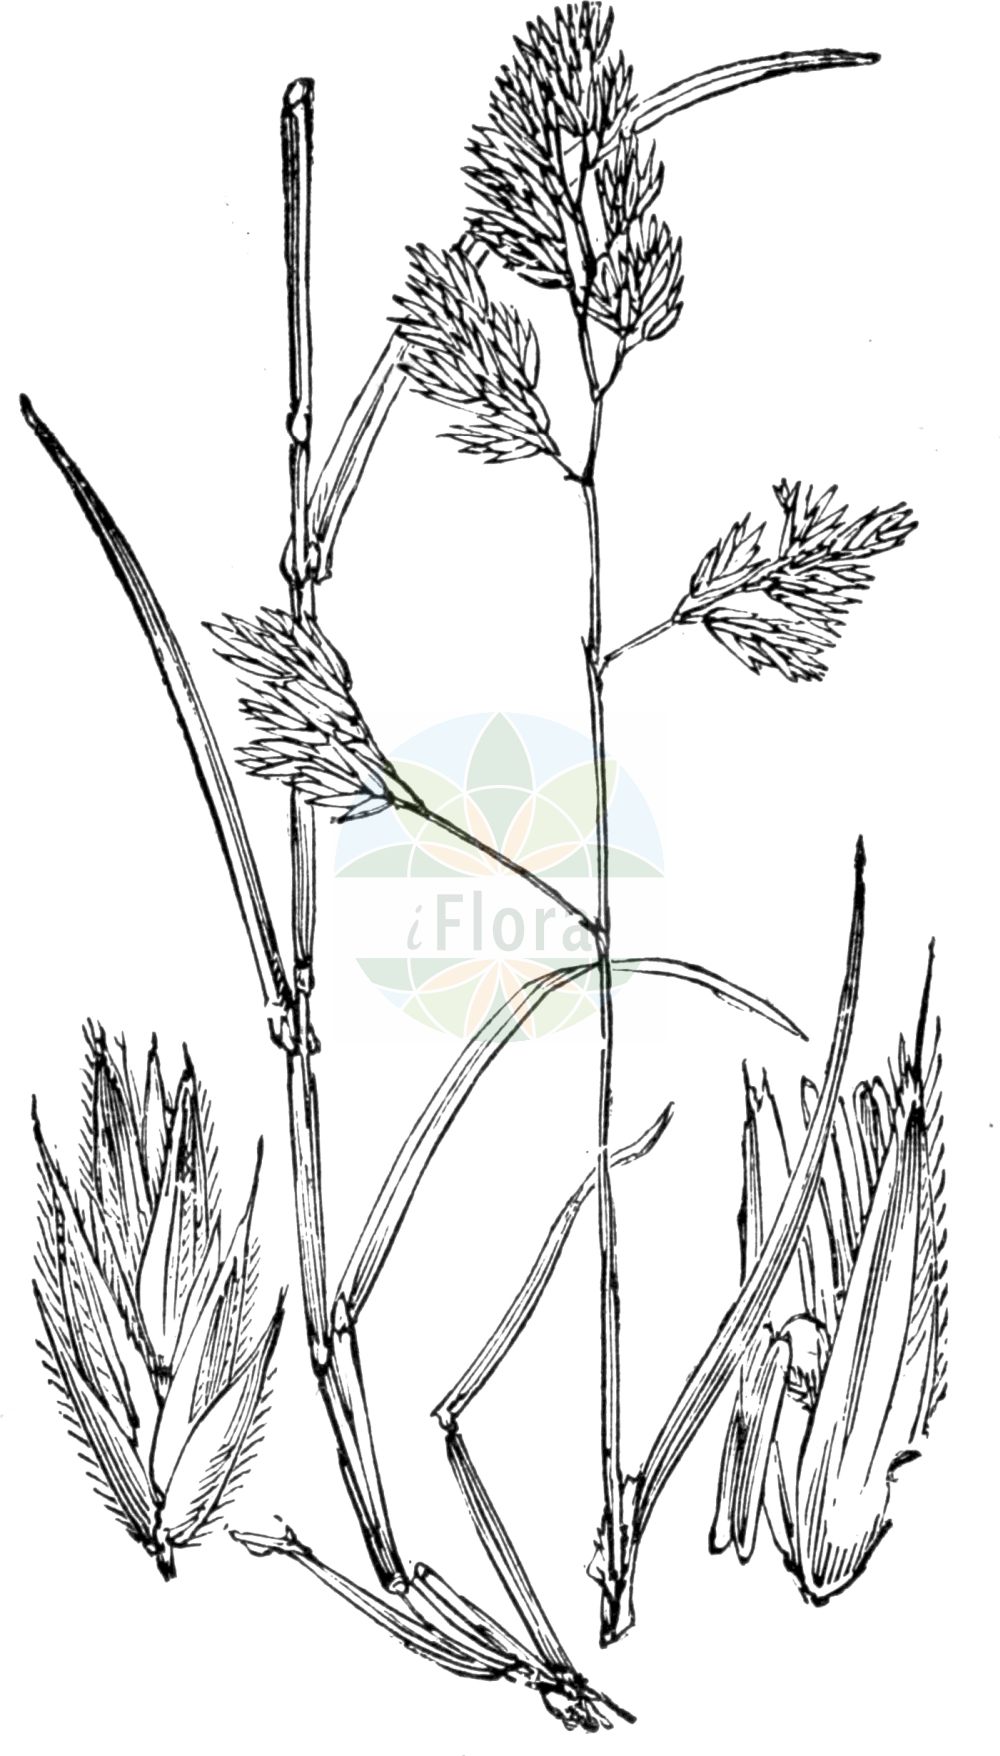 Historische Abbildung von Dactylis glomerata (Gewöhnliches Knäuelgras - Cock's-foot). Das Bild zeigt Blatt, Bluete, Frucht und Same. ---- Historical Drawing of Dactylis glomerata (Gewöhnliches Knäuelgras - Cock's-foot). The image is showing leaf, flower, fruit and seed.(Dactylis glomerata,Gewöhnliches Knäuelgras,Cock's-foot,Dactylis glomerata,Gewoehnliches Knaeuelgras,Knaulgras,Cock's-foot,Hardgrass,Orchardgrass,Rough Cocksfoot,Dactylis,Knäuelgras,Cocksfoot,Poaceae,Süßgräser,Grass family,Blatt,Bluete,Frucht,Same,leaf,flower,fruit,seed,Fitch et al. (1880))